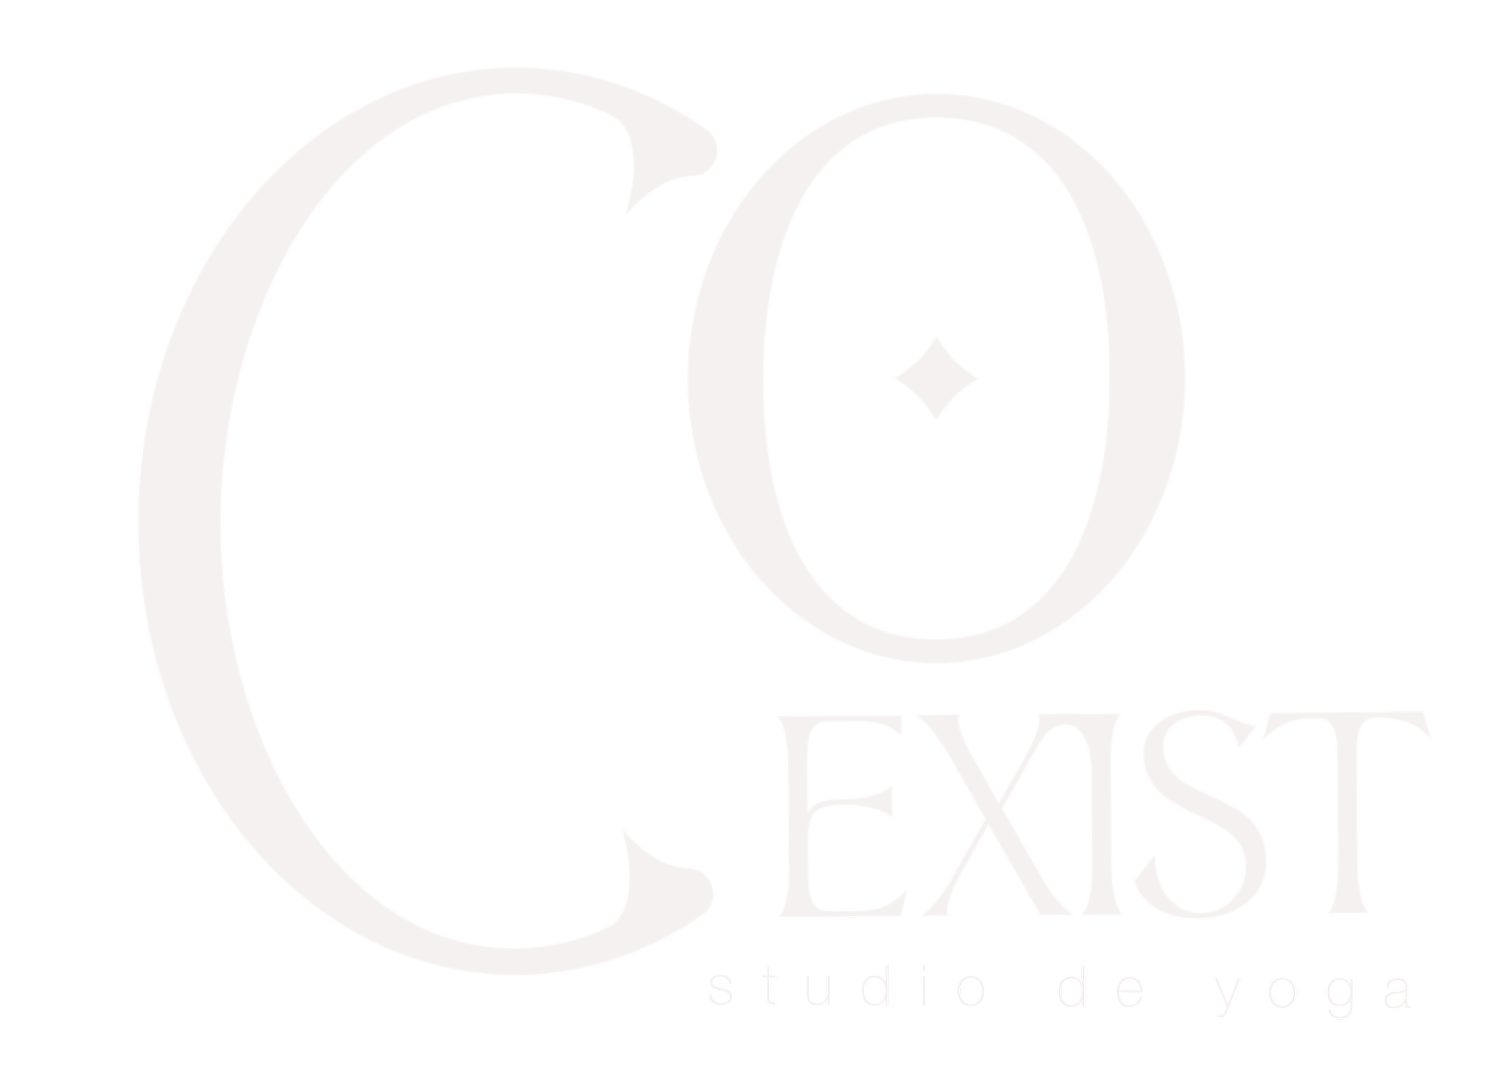 Coexist Yoga